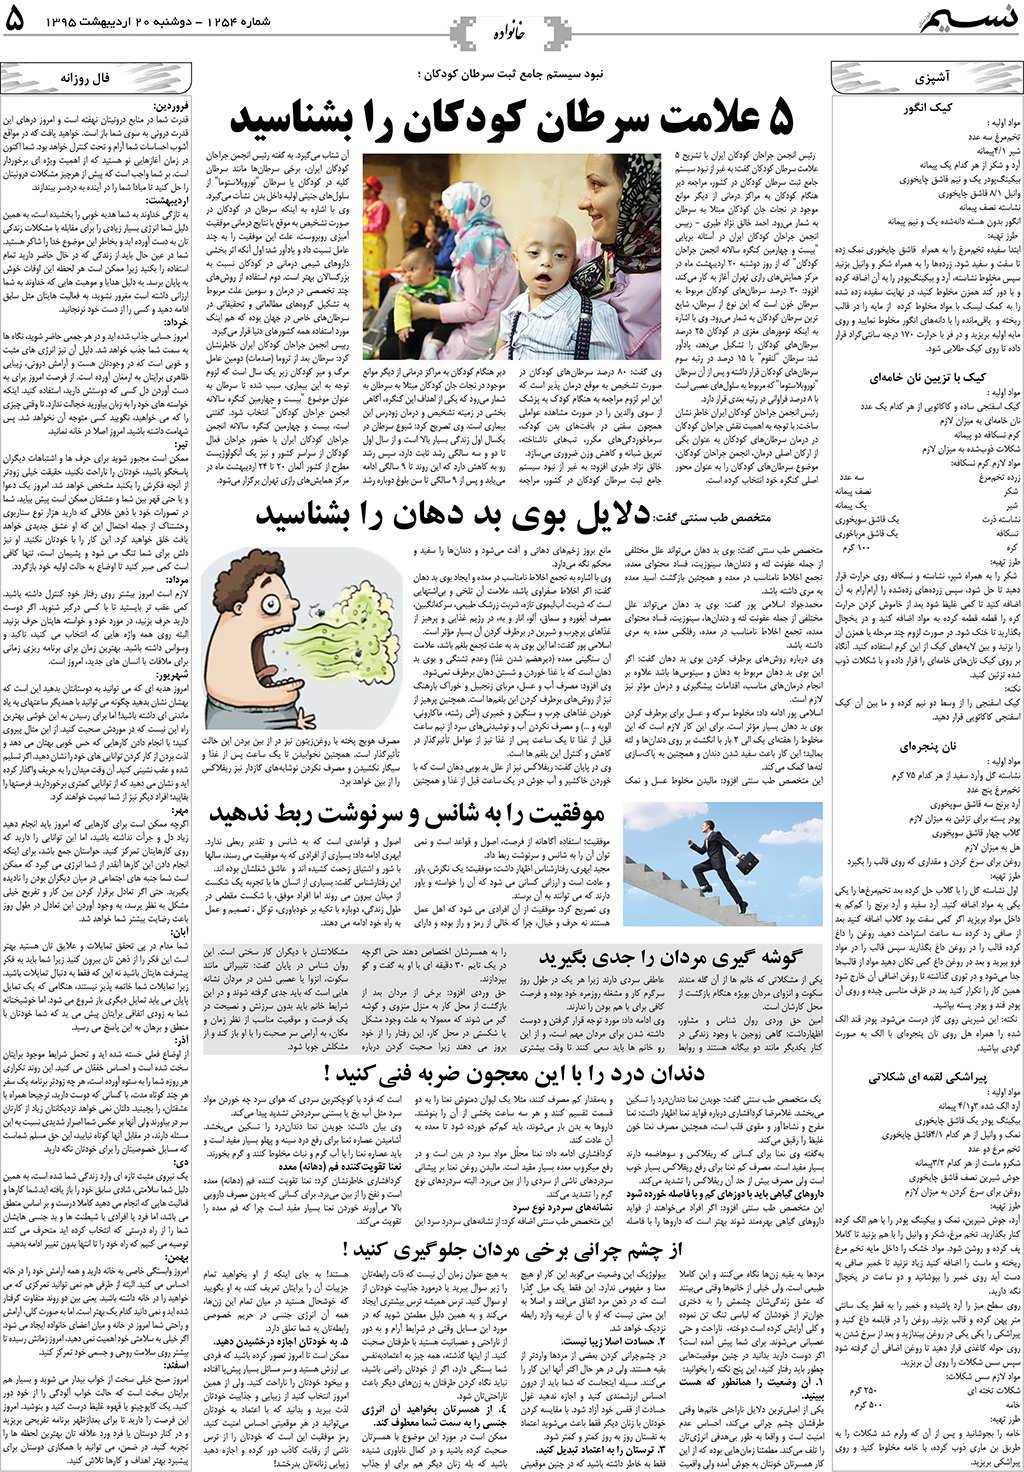 صفحه خانواده روزنامه نسیم شماره 1254